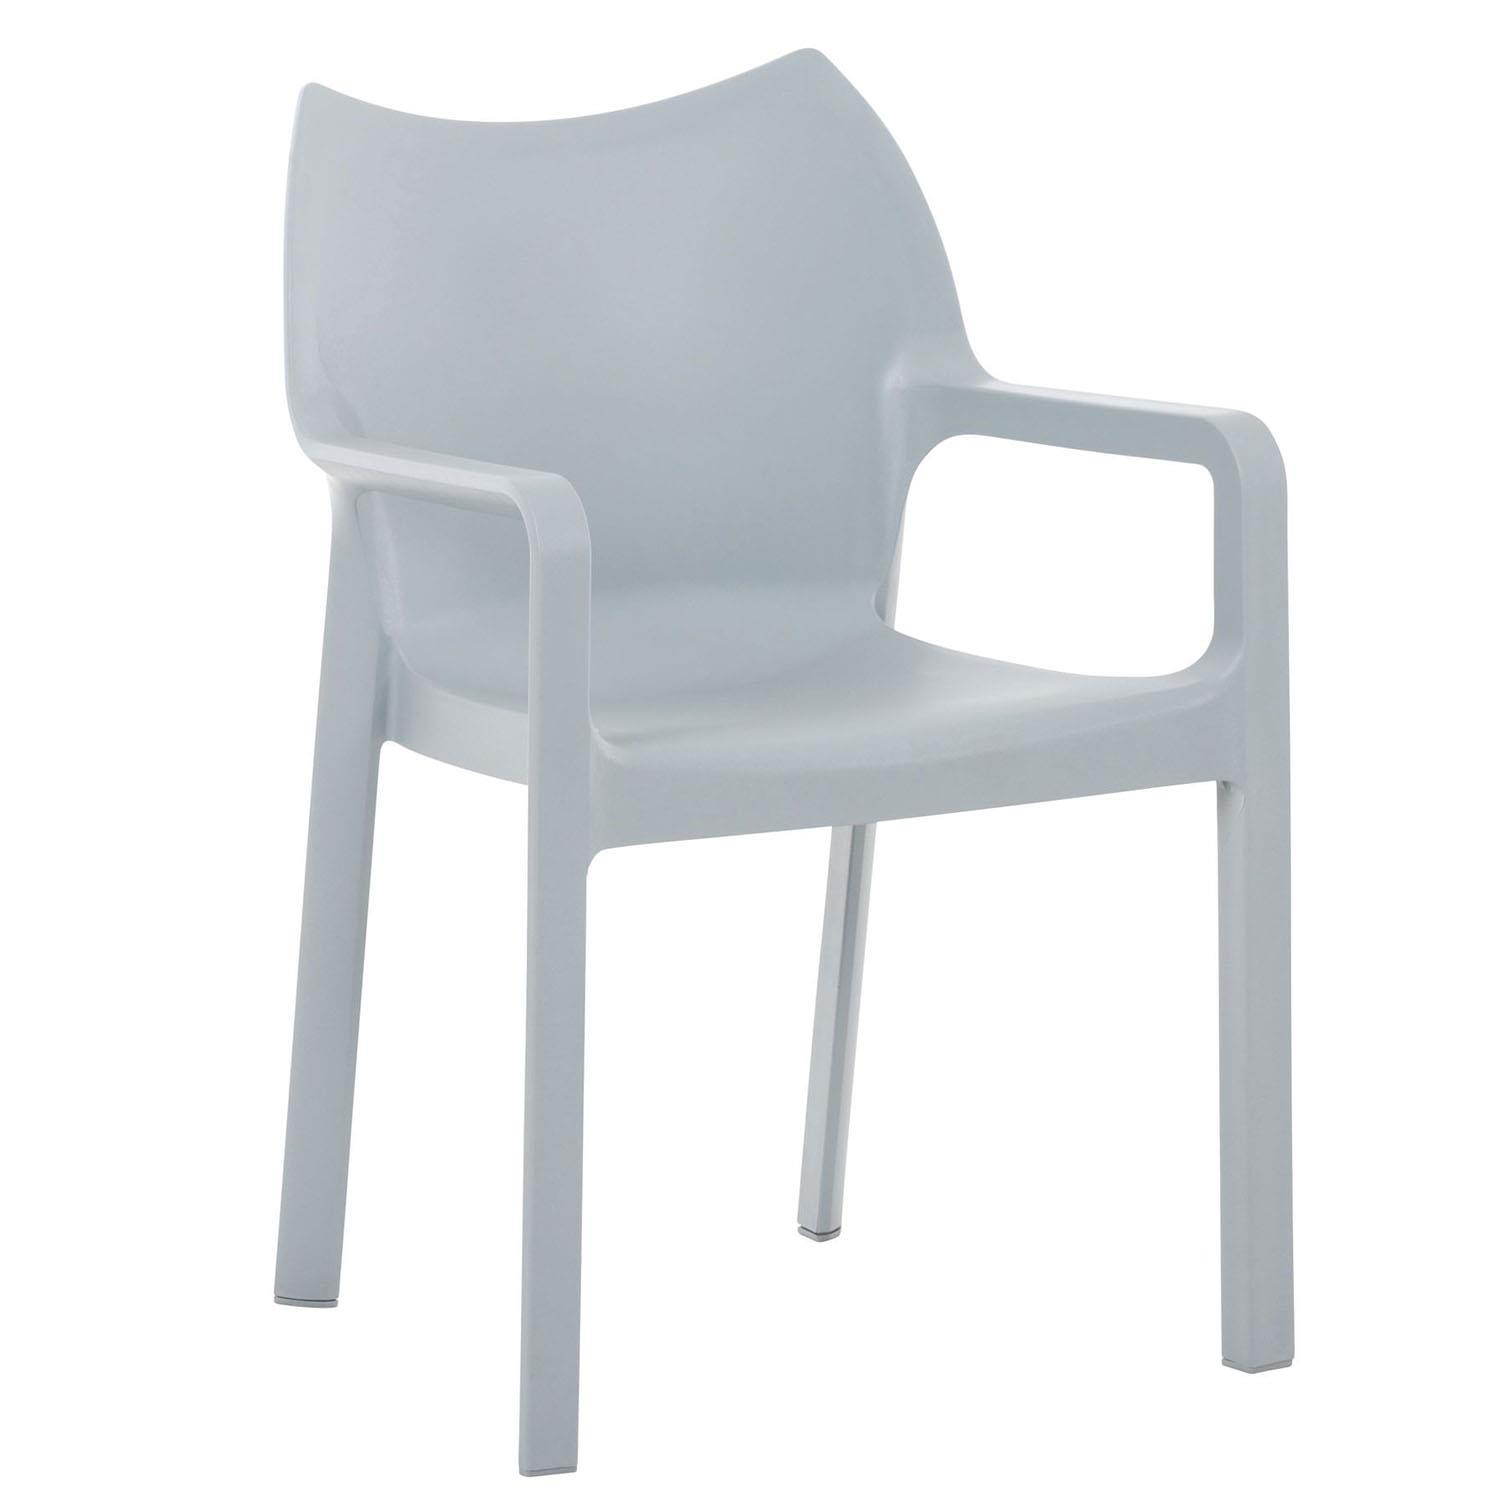 Cadeira de Visita RAMOS, Apoia Braços Integrados, Moderno e Resistente, Cor Cinza Claro